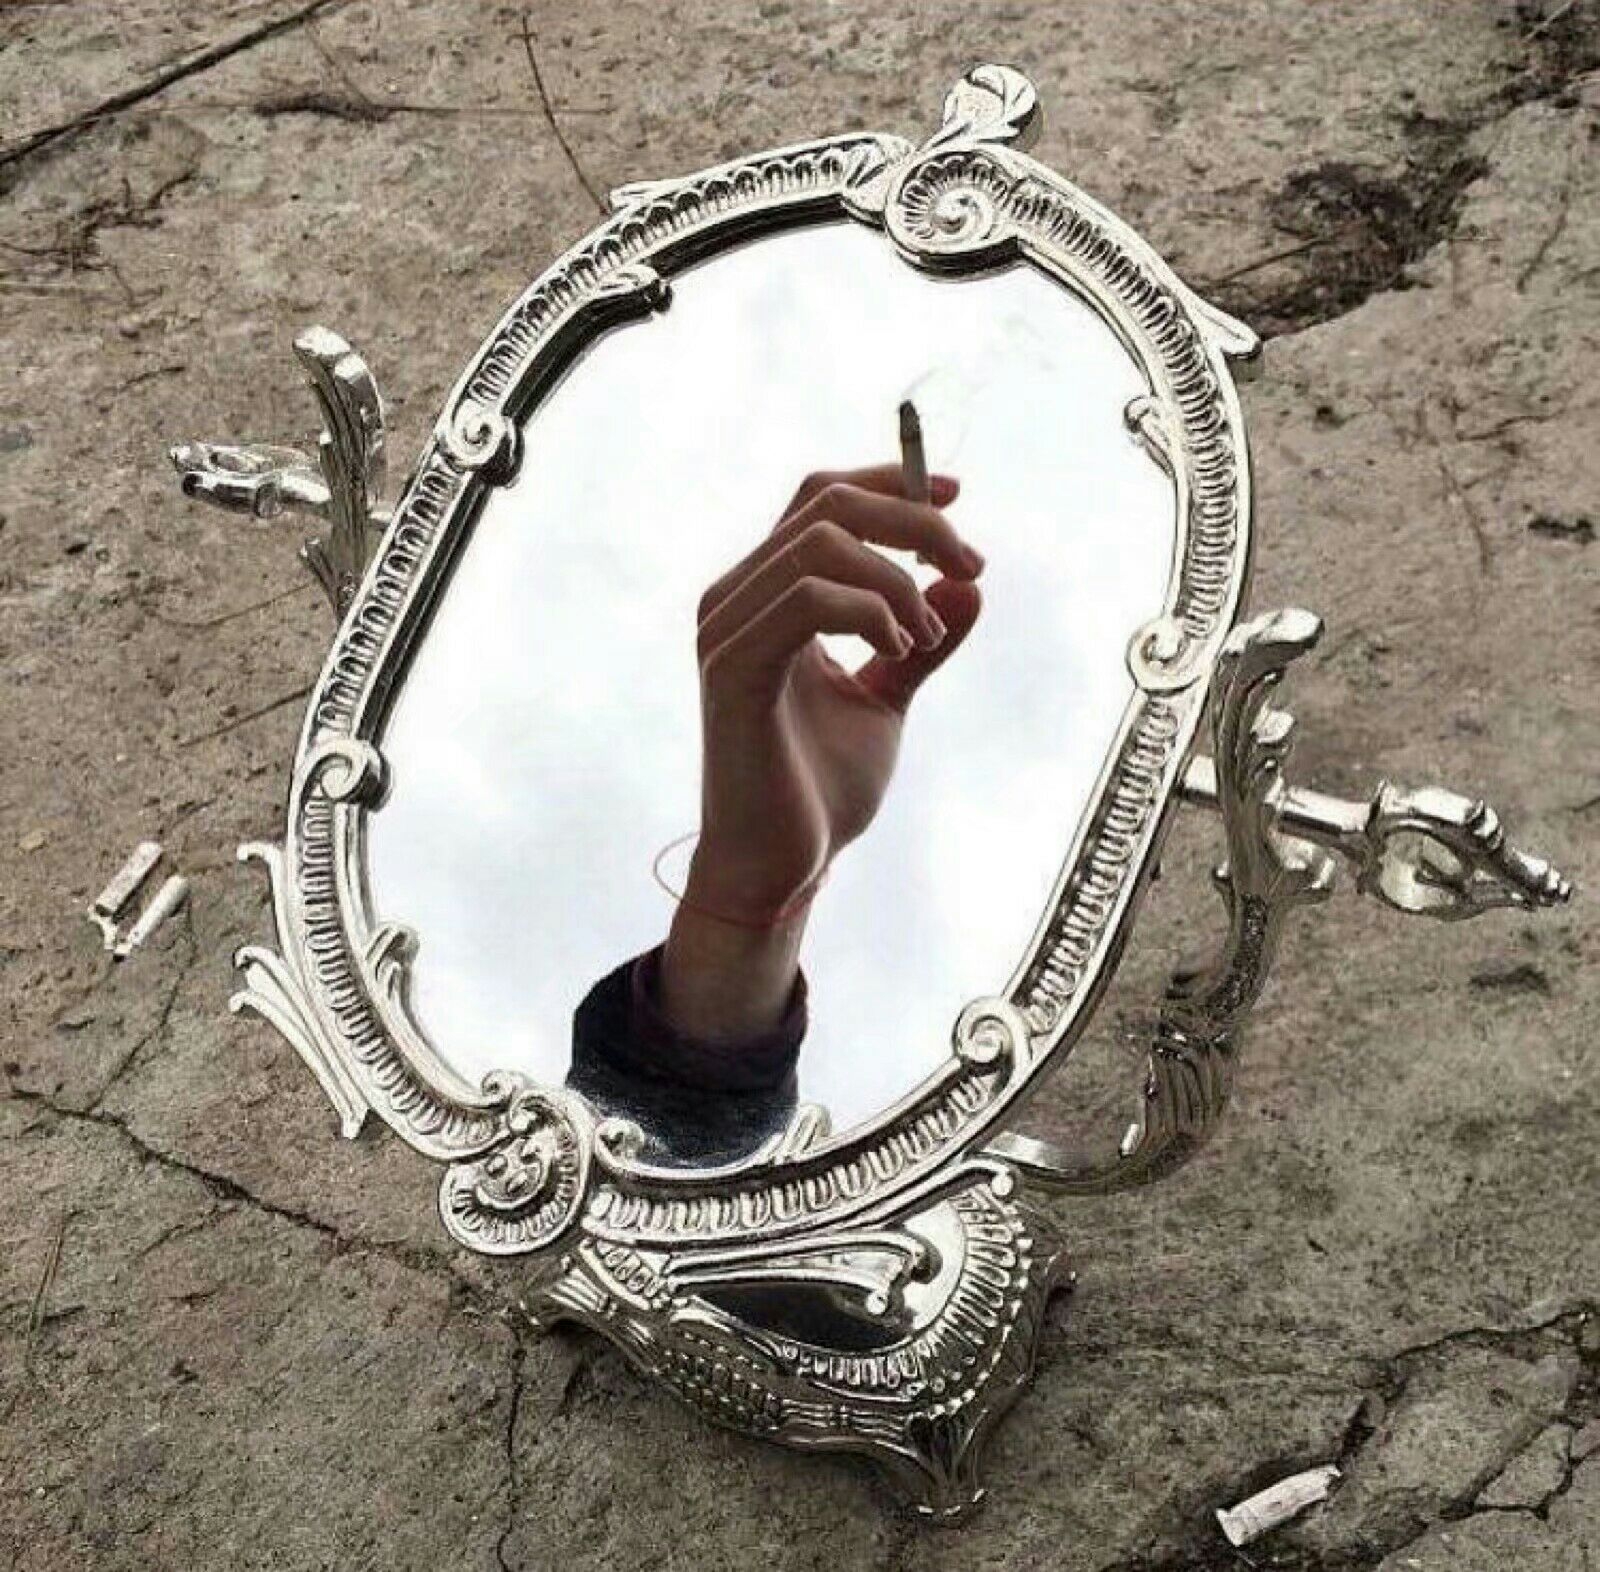 Проходит сквозь зеркало. Фотосессия с зеркалом. Отражение в зеркале. Зеркало арт. Зеркало в руке.